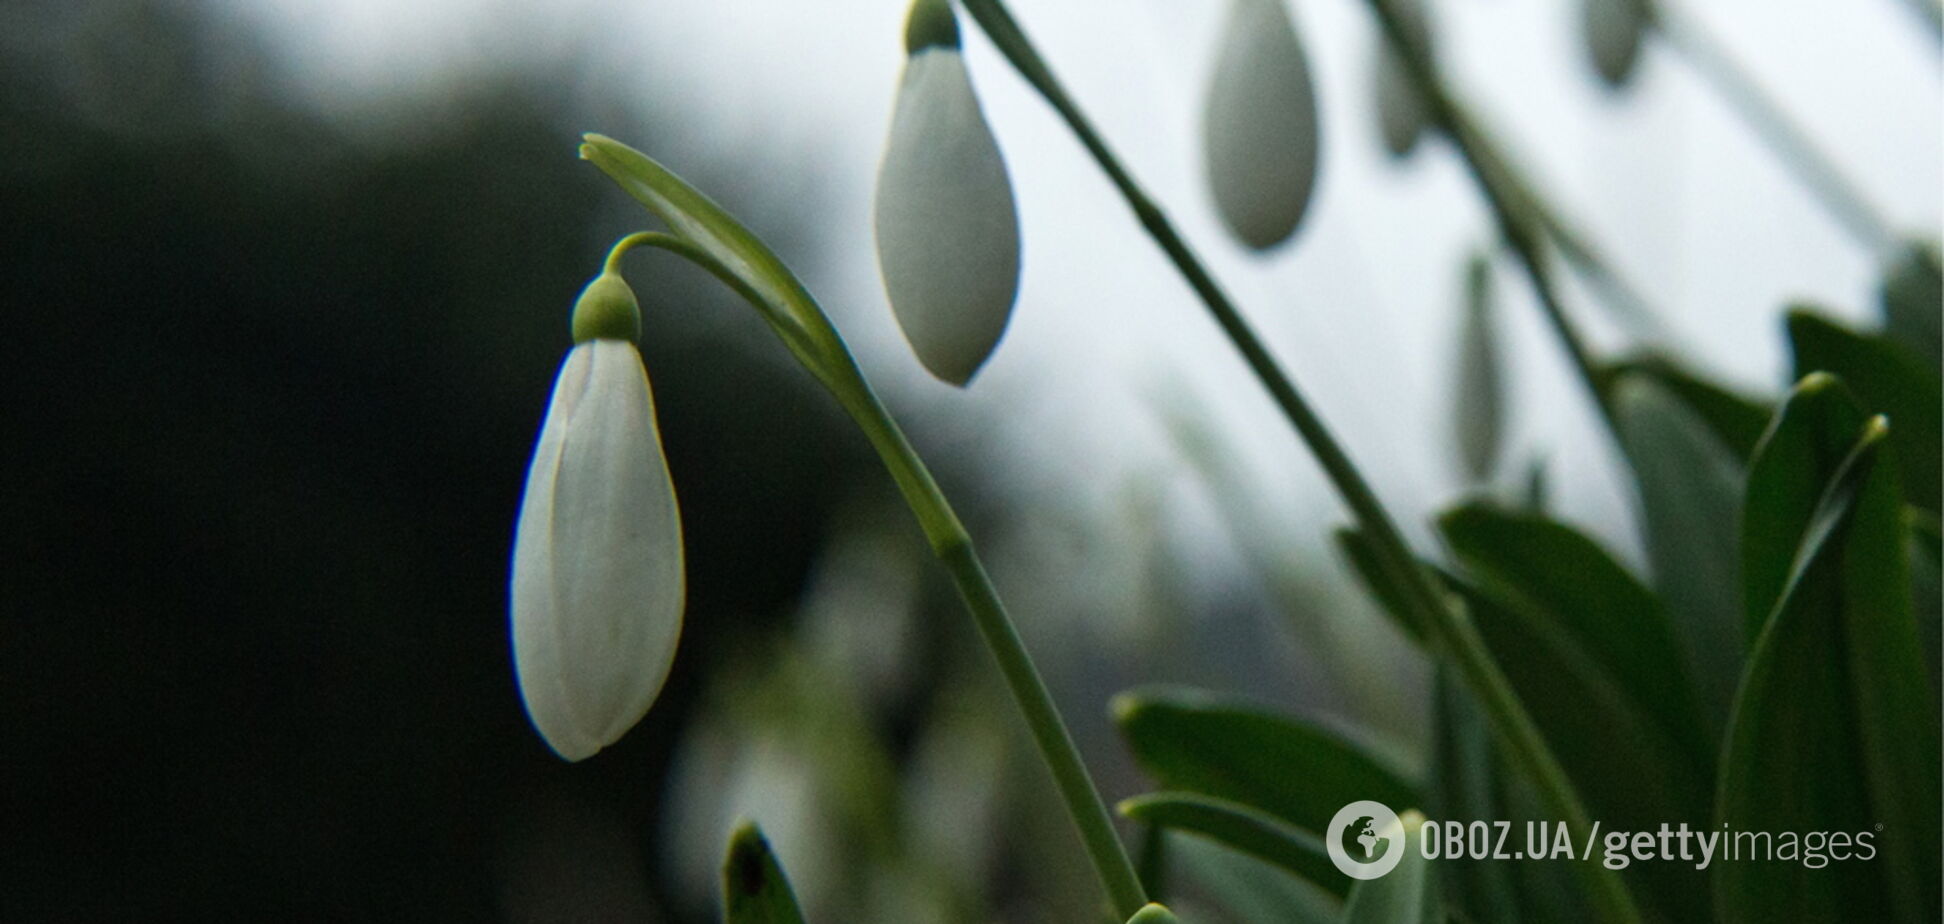  Весной запахнет: синоптики пообещали теплую и сухую погоду в Украине